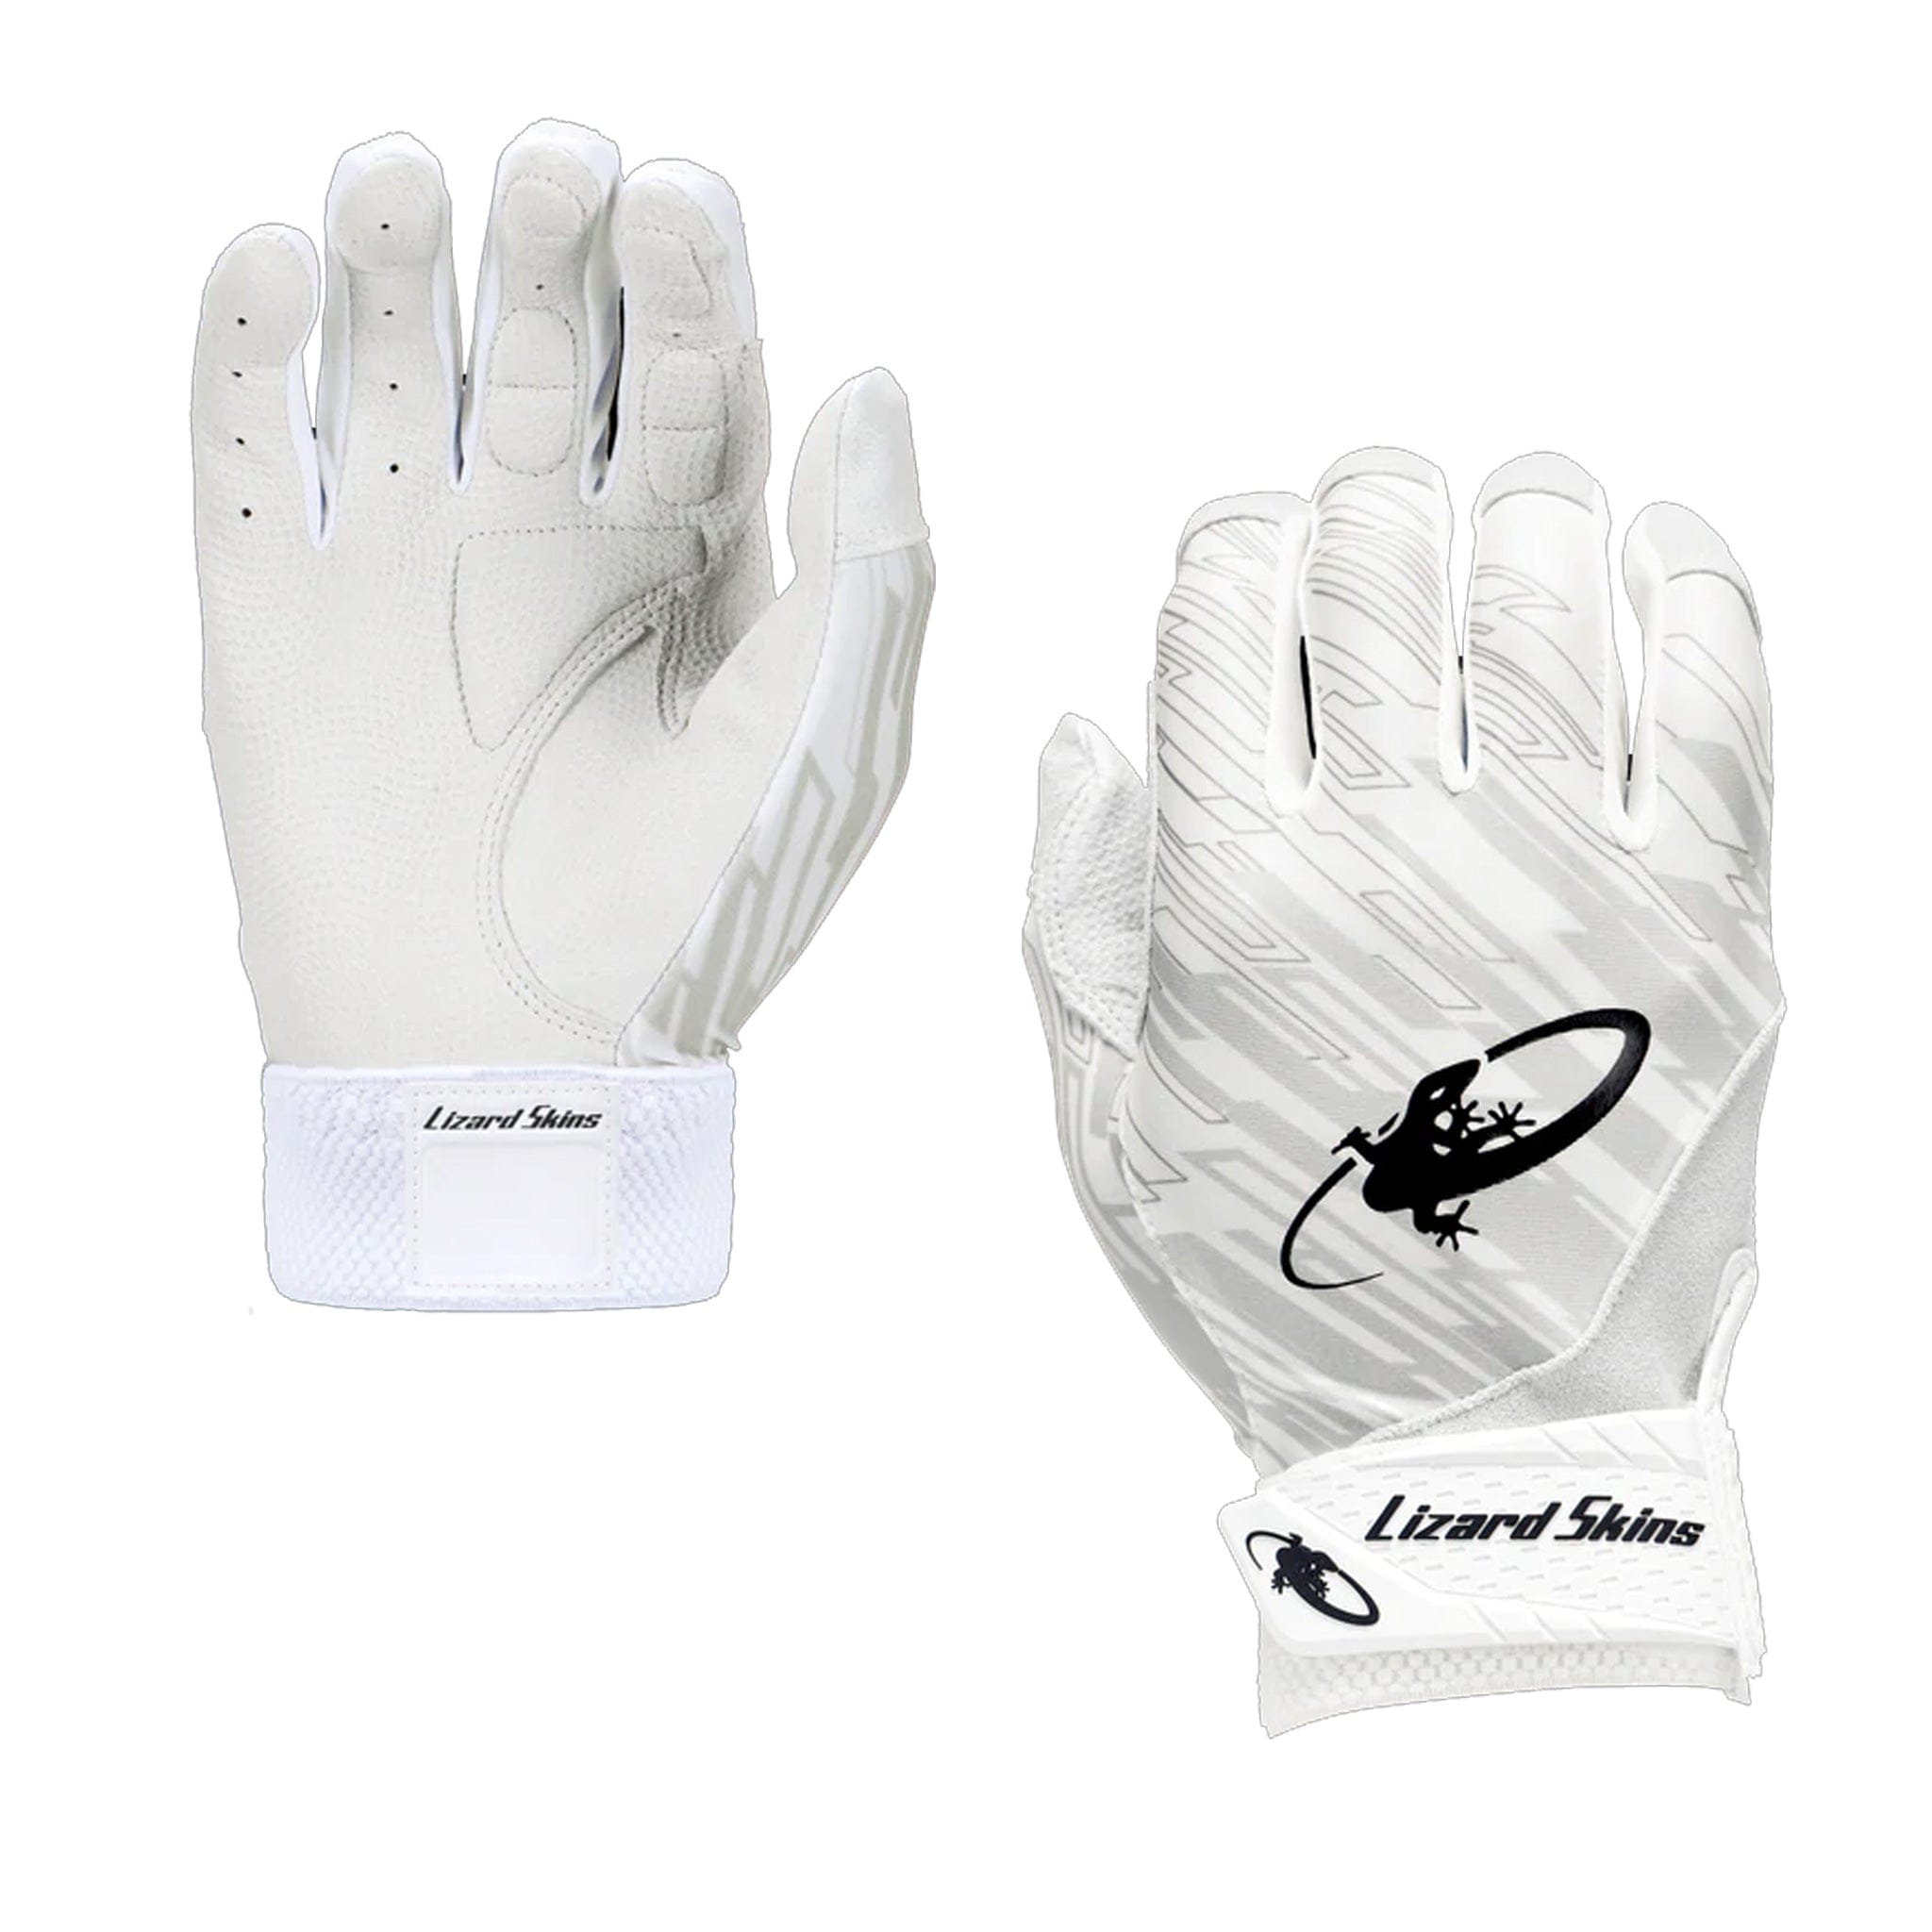 http://www.thehockeyshop.com/cdn/shop/products/lizard-skins-inner-gloves-lizard-skins-senior-padded-inner-glove-white-rh-xl-28890066976834.jpg?v=1682287928